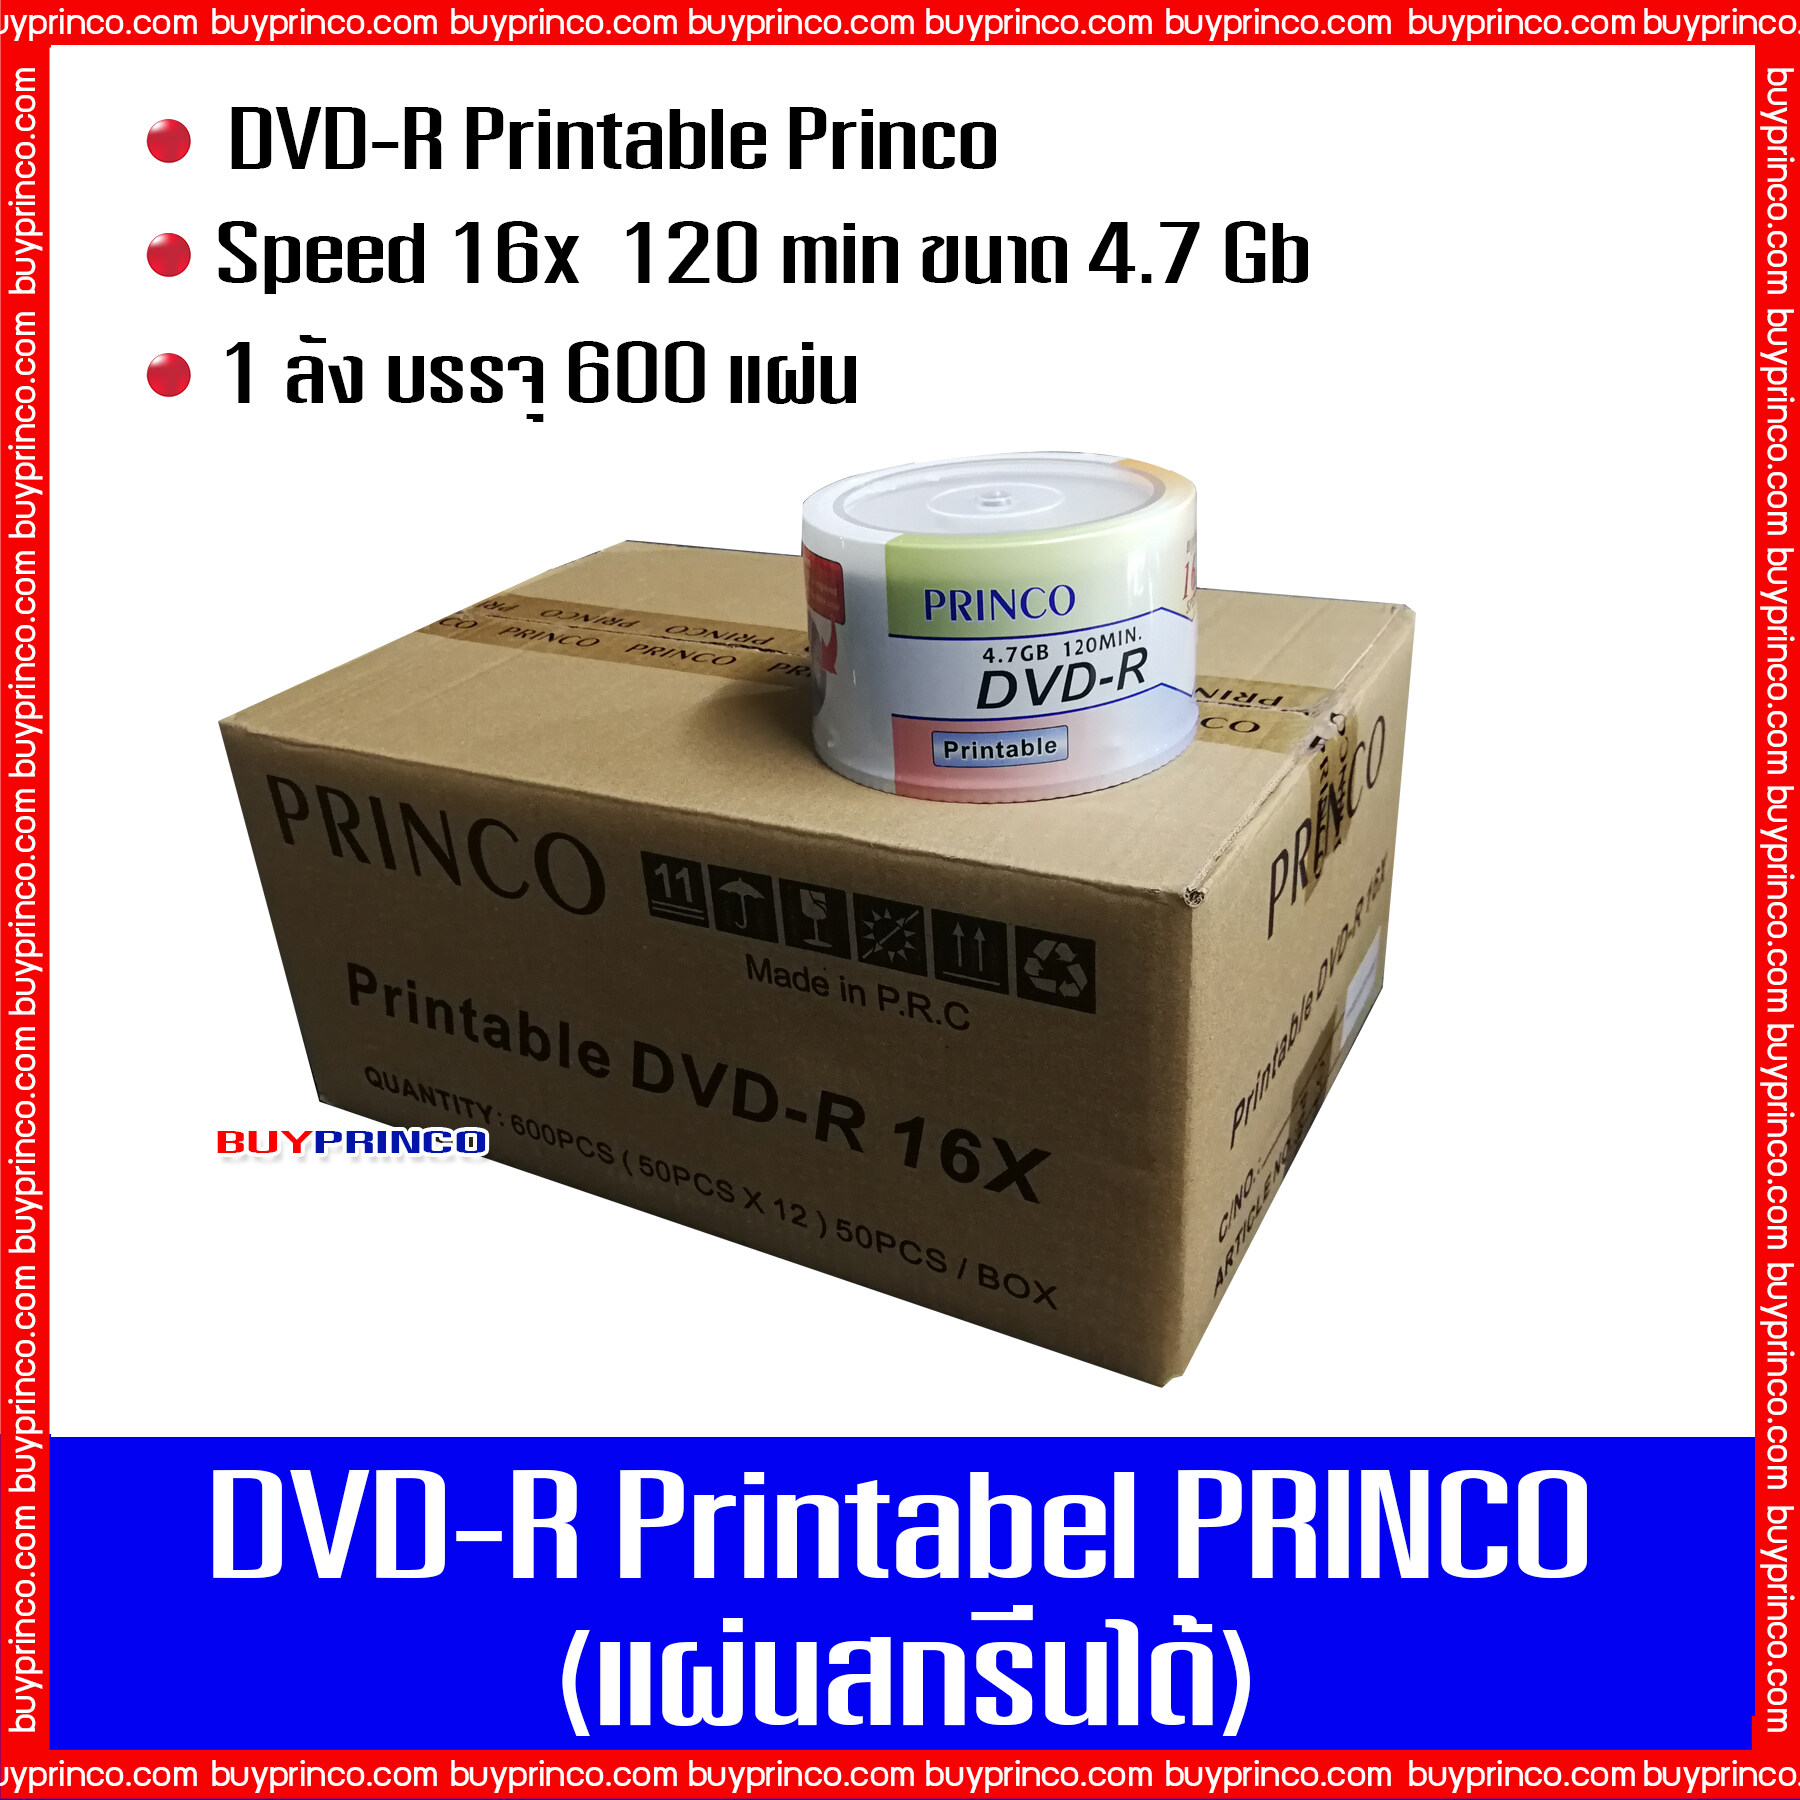 แผ่นดีวีดี พรินโก้ DVD-R Princo Printable (แผ่นดีวีดีสกรีนได้) ยกลัง 1 ลังบรรจุ 600 แผ่น